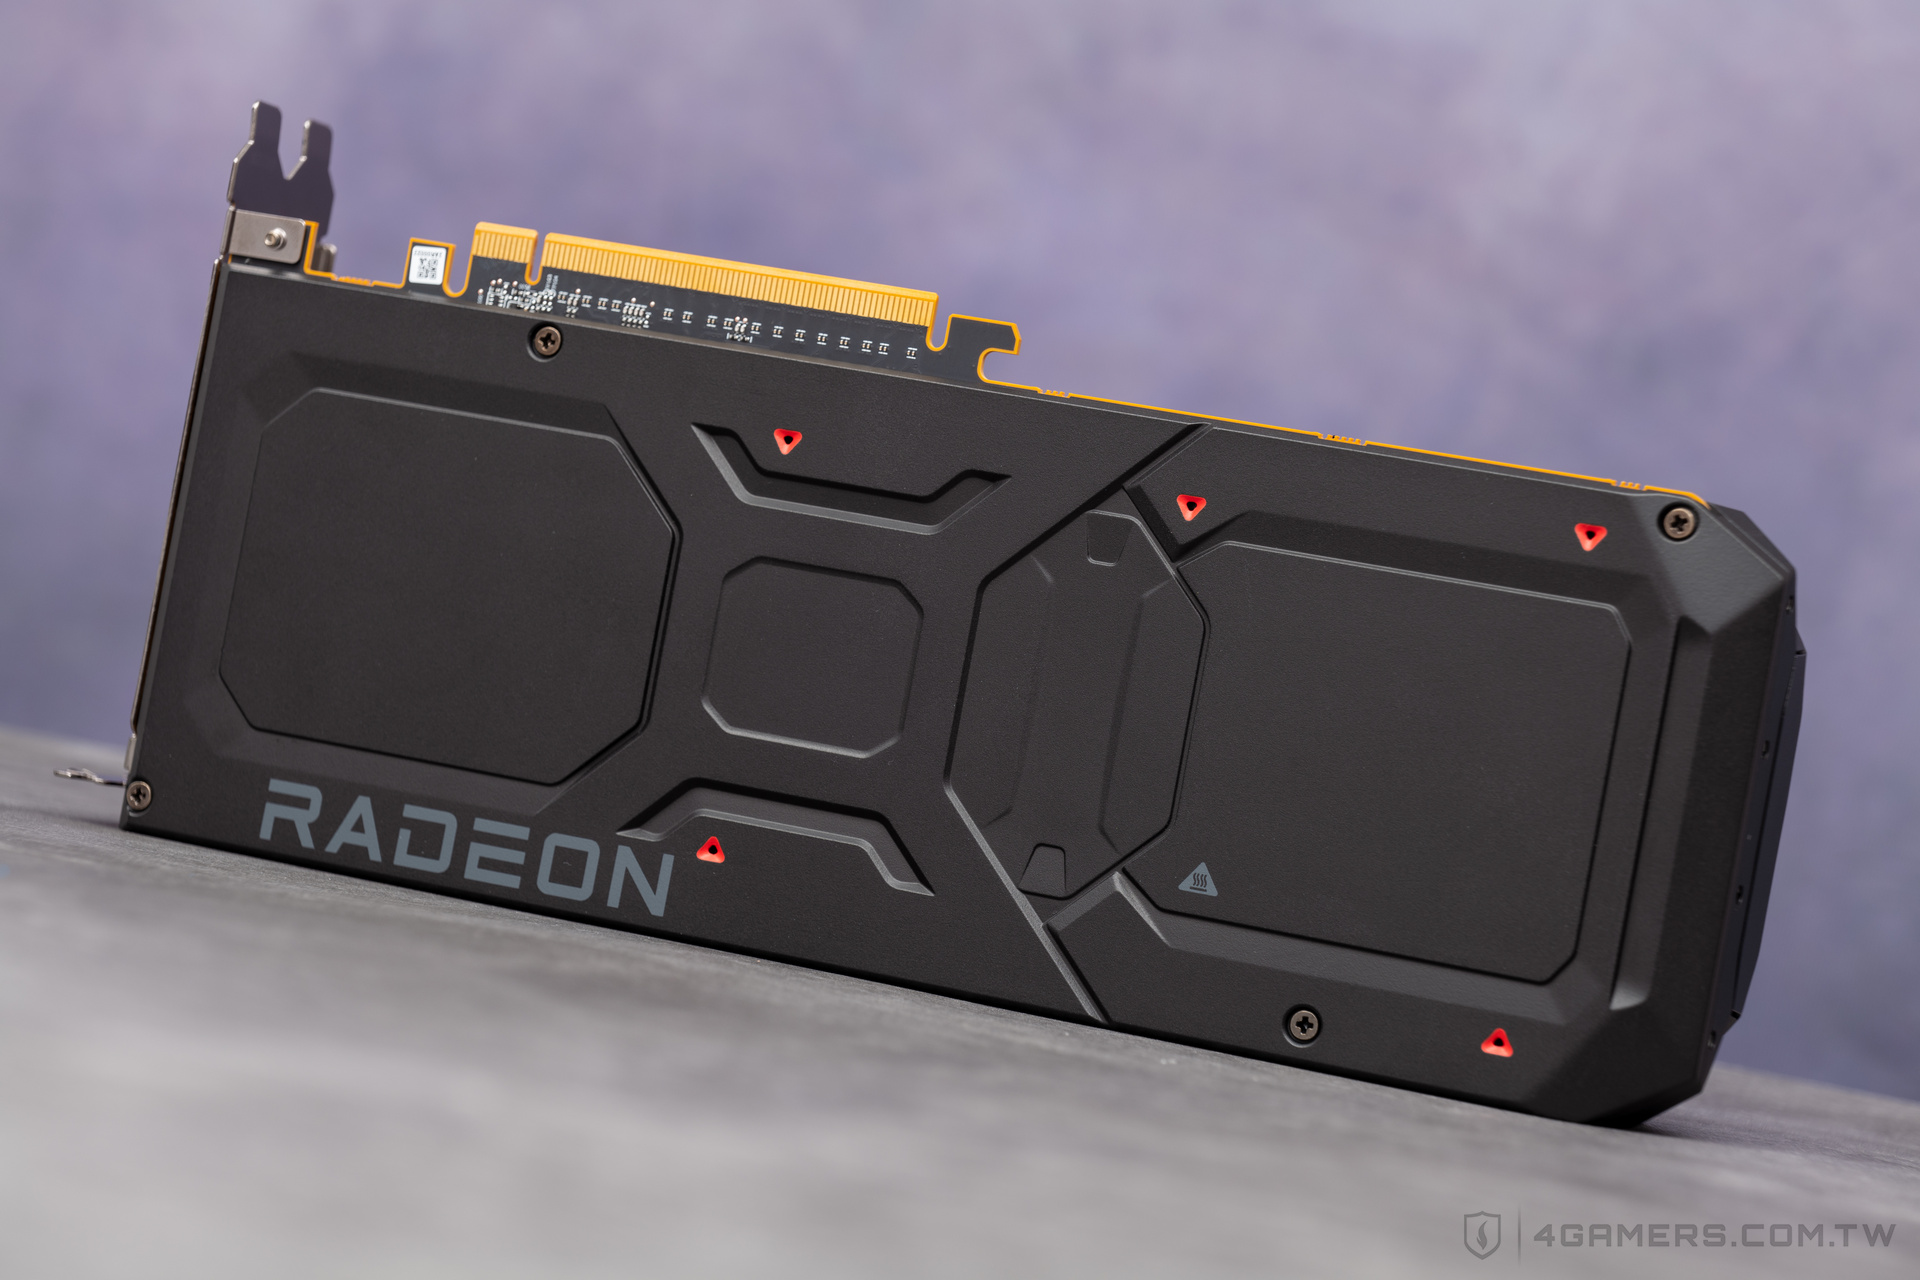 AMD Radeon RX 7900 XT